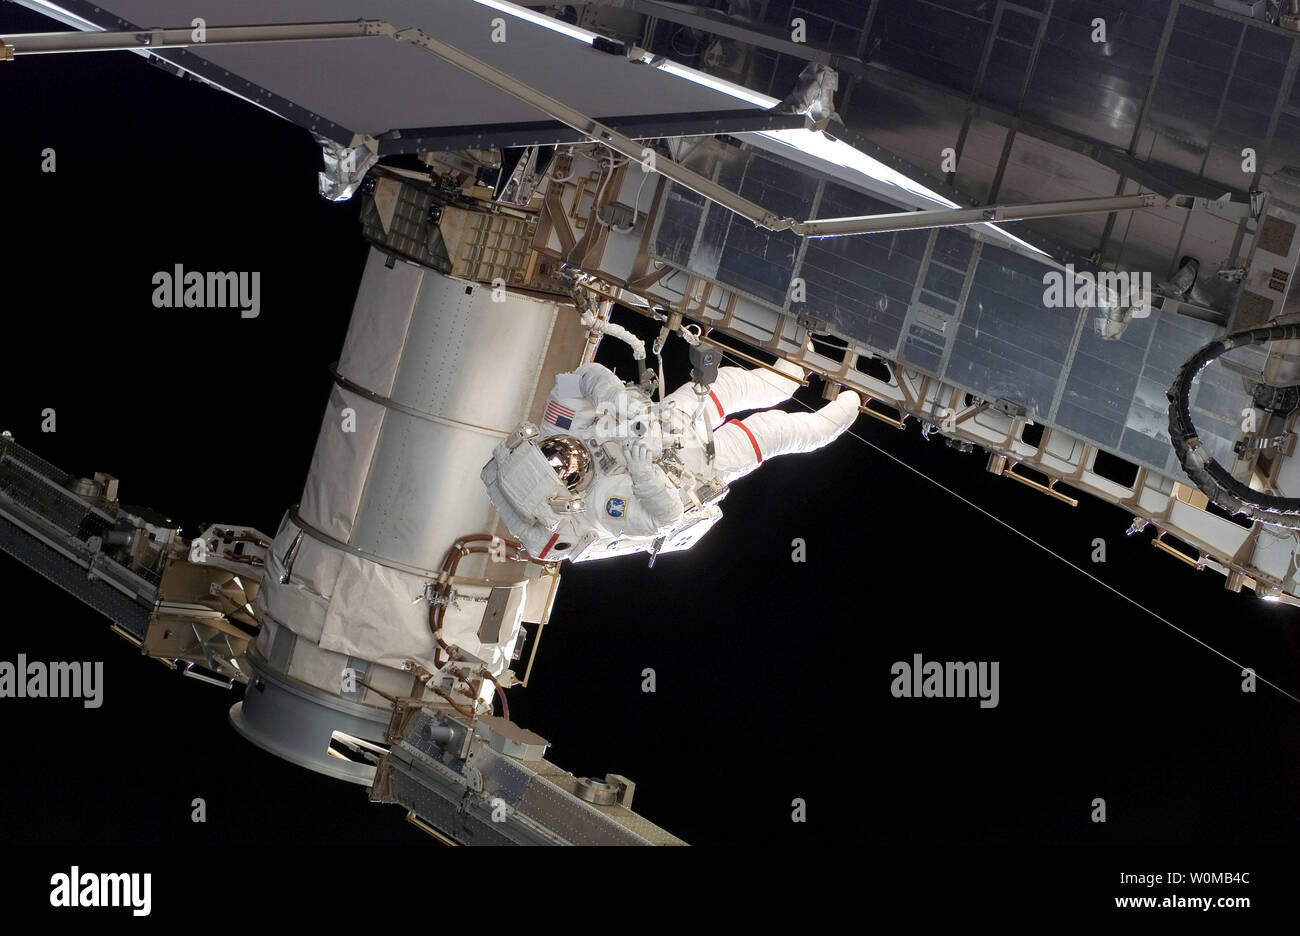 Astronauten Rick Mastracchio STS-118 Mission Spezialisten beteiligt sich an der ersten geplanten Sitzung der Mission für Extra Vehicular Activity (EVA), als Aufbau fährt auf der Internationalen Raumstation, am 11. August 2007. Während der 6-Stunden-, 17-minütige spacewalk Mastracchio befestigt der Steuerbord 5 (S5) von der Station, die Wärme - die Ablehnung Kühler von Port 6 (P6) der Station eingefahren, und mehrere bekommen Aufgaben. Stockfoto